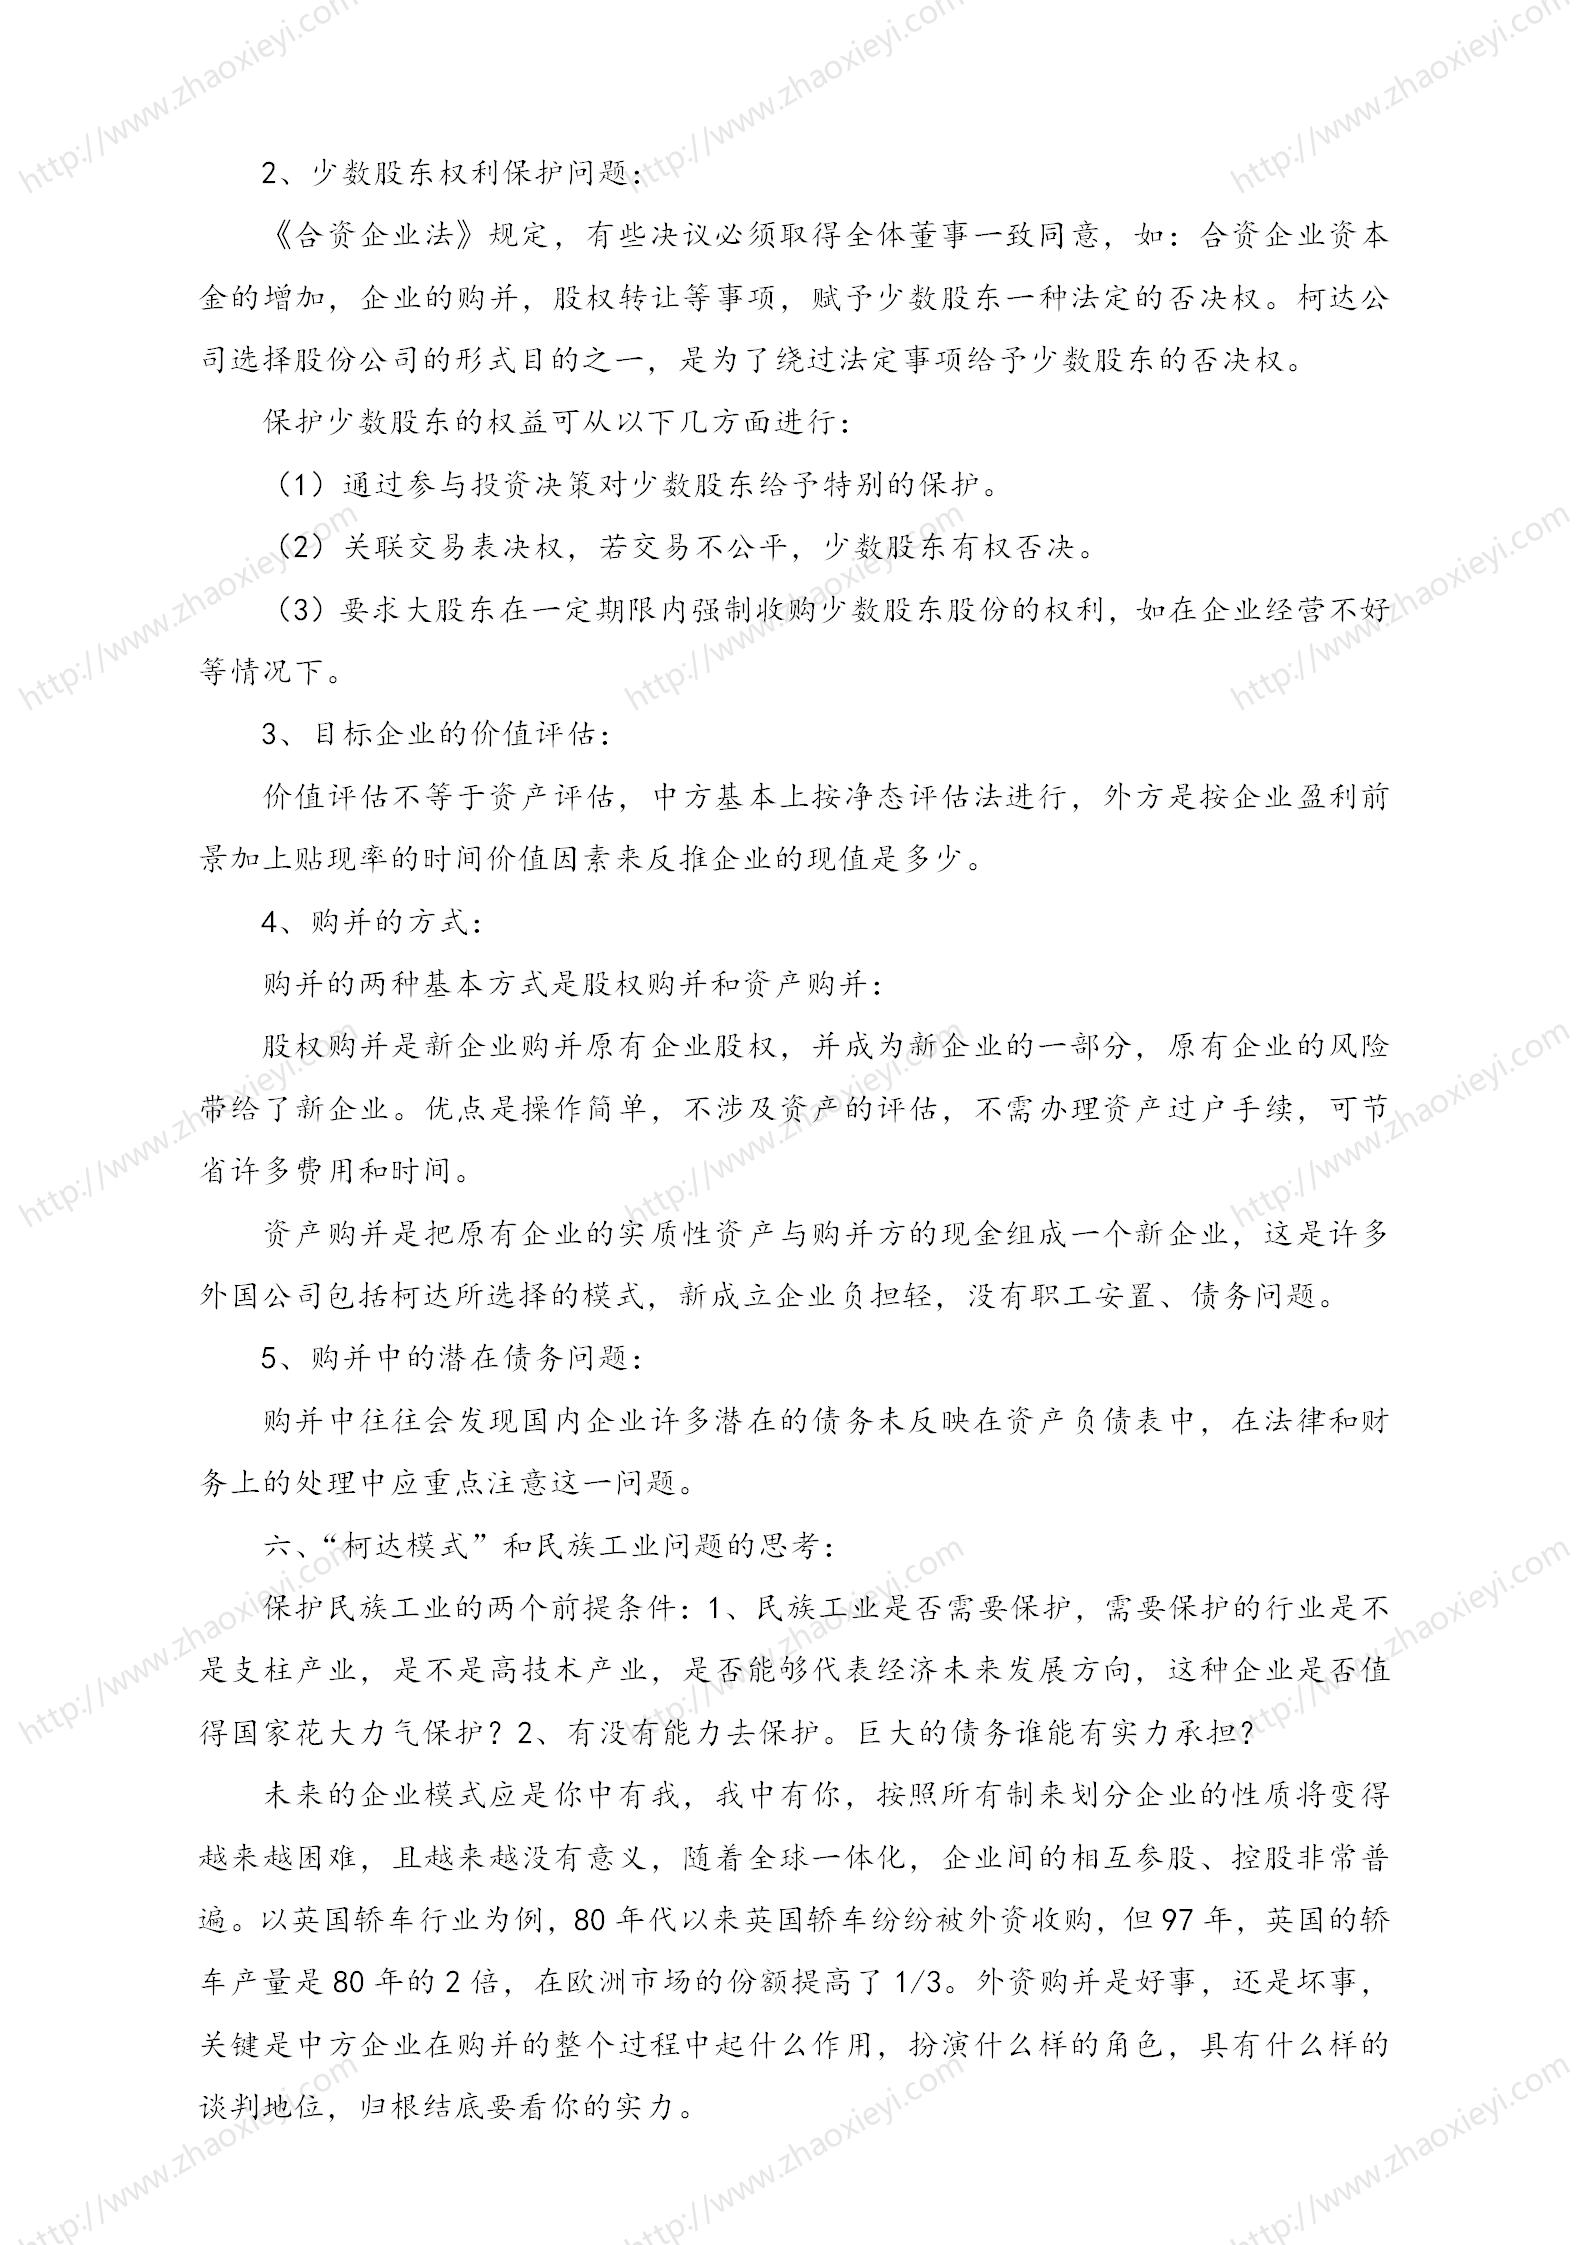 中国企业并购经典案例_159.jpg